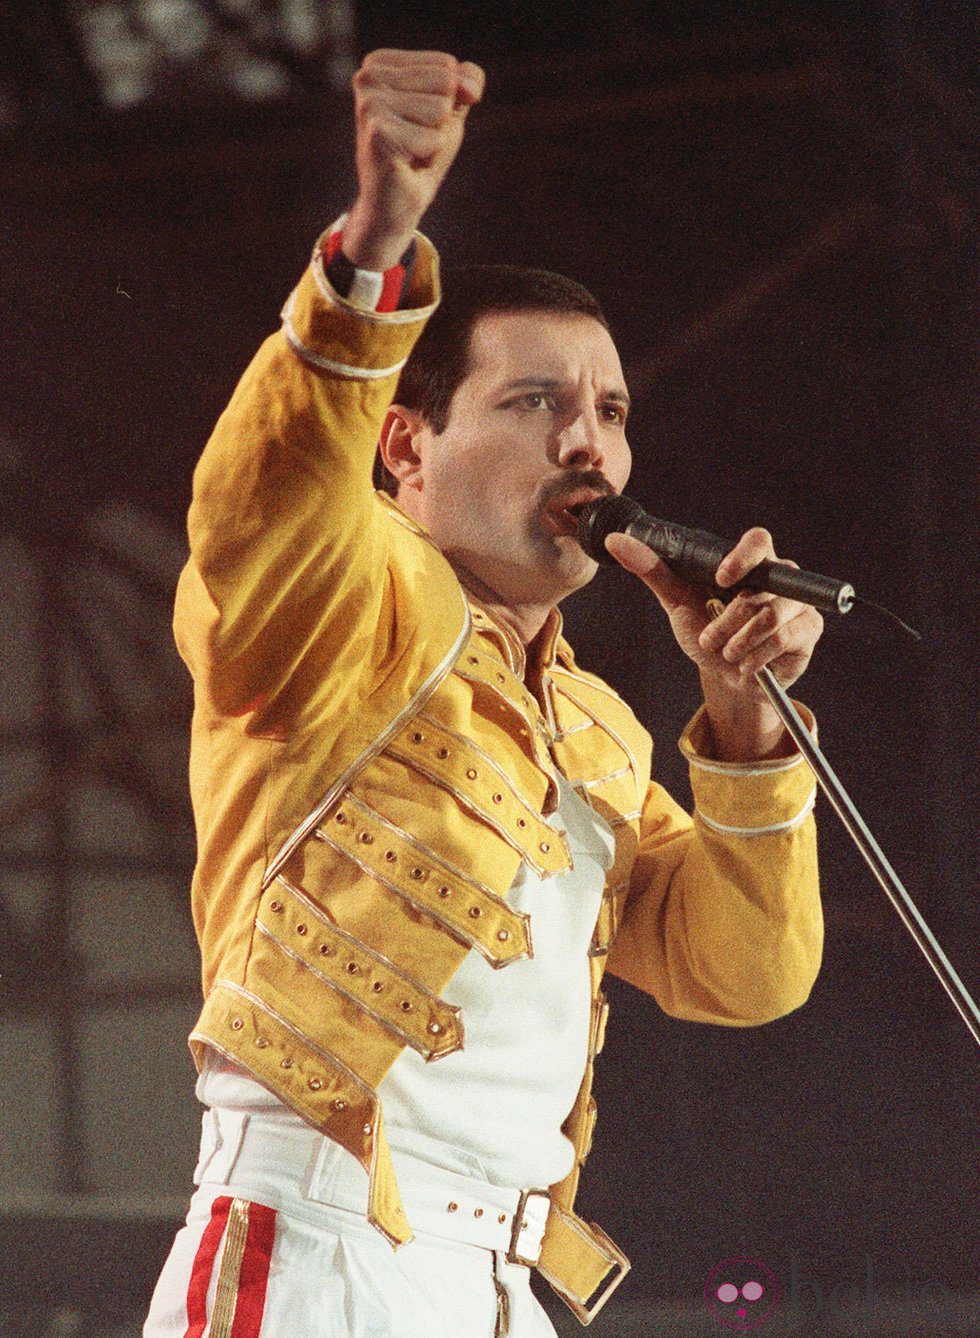 Freddie Mercury, uno de los mitos de la música en el S.XX